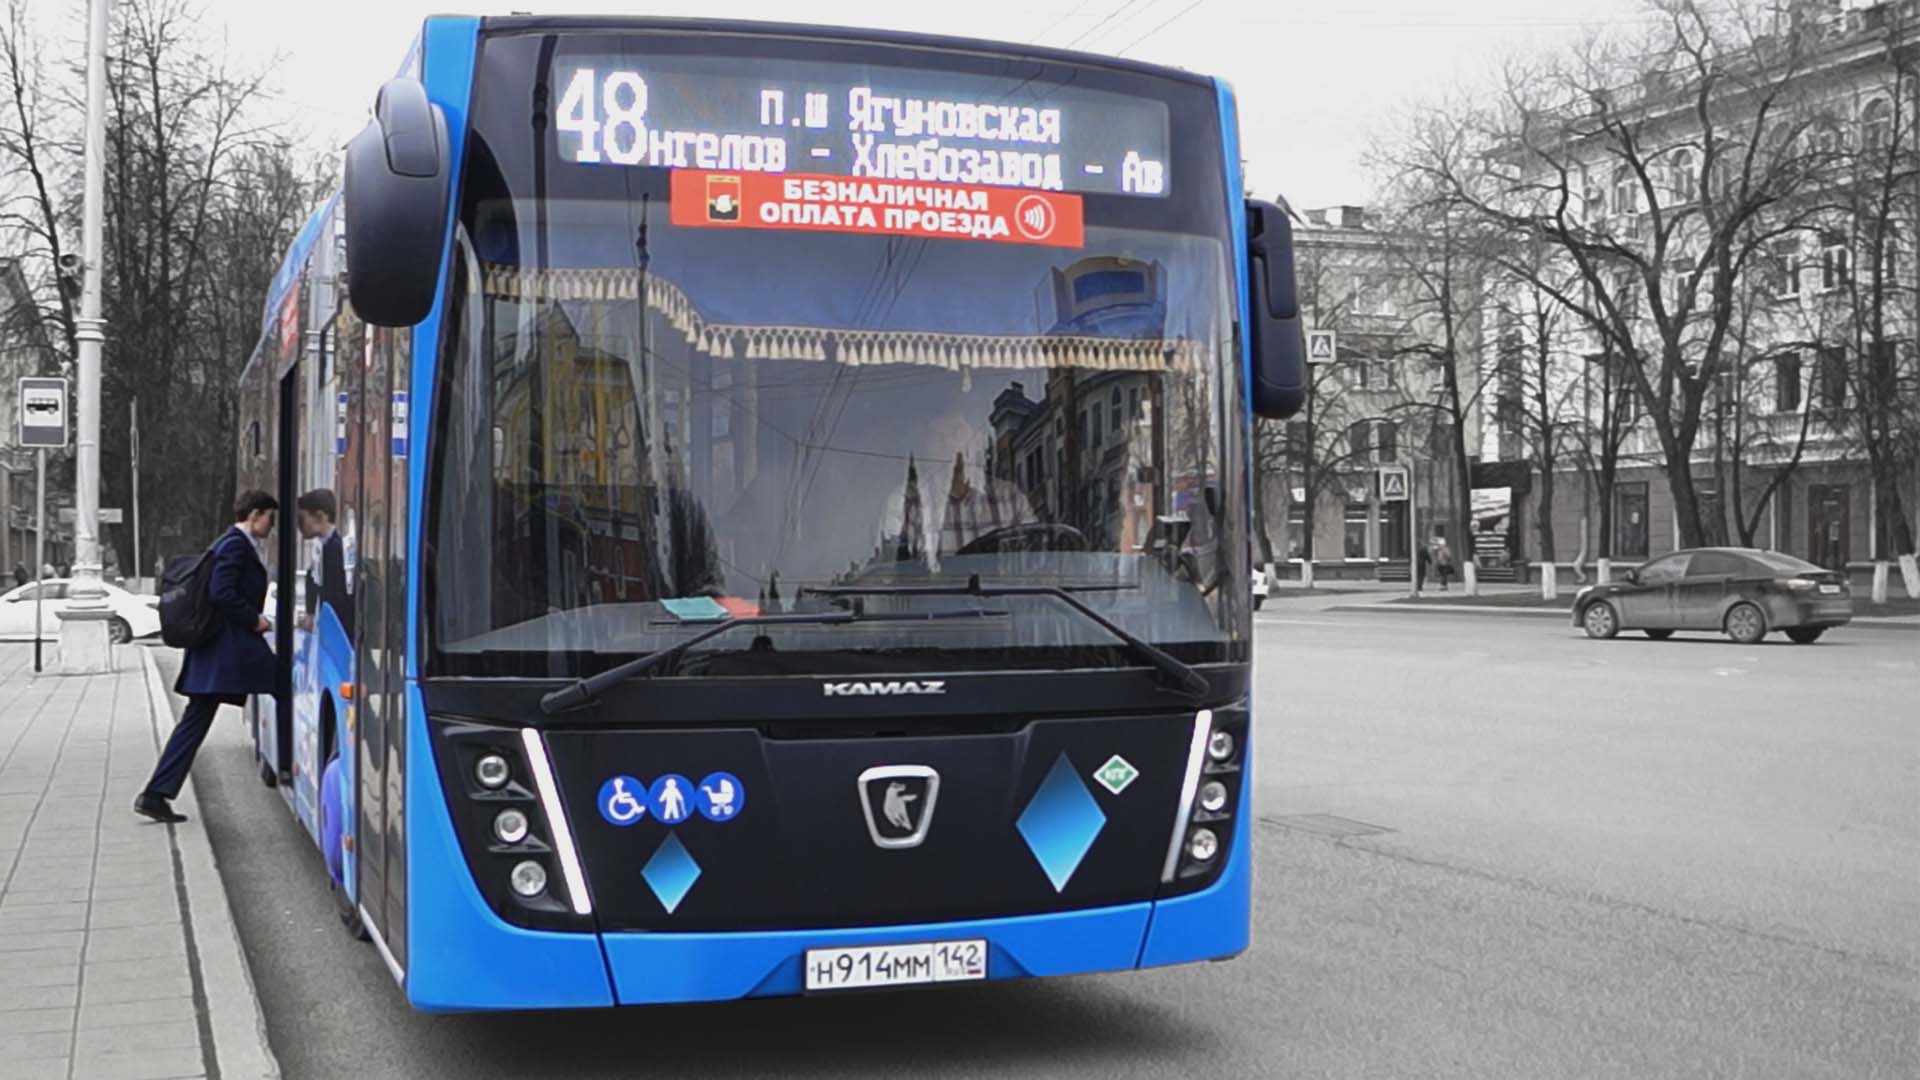 В Кузбассе повысят стоимость проезда. Что об этом думают люди?